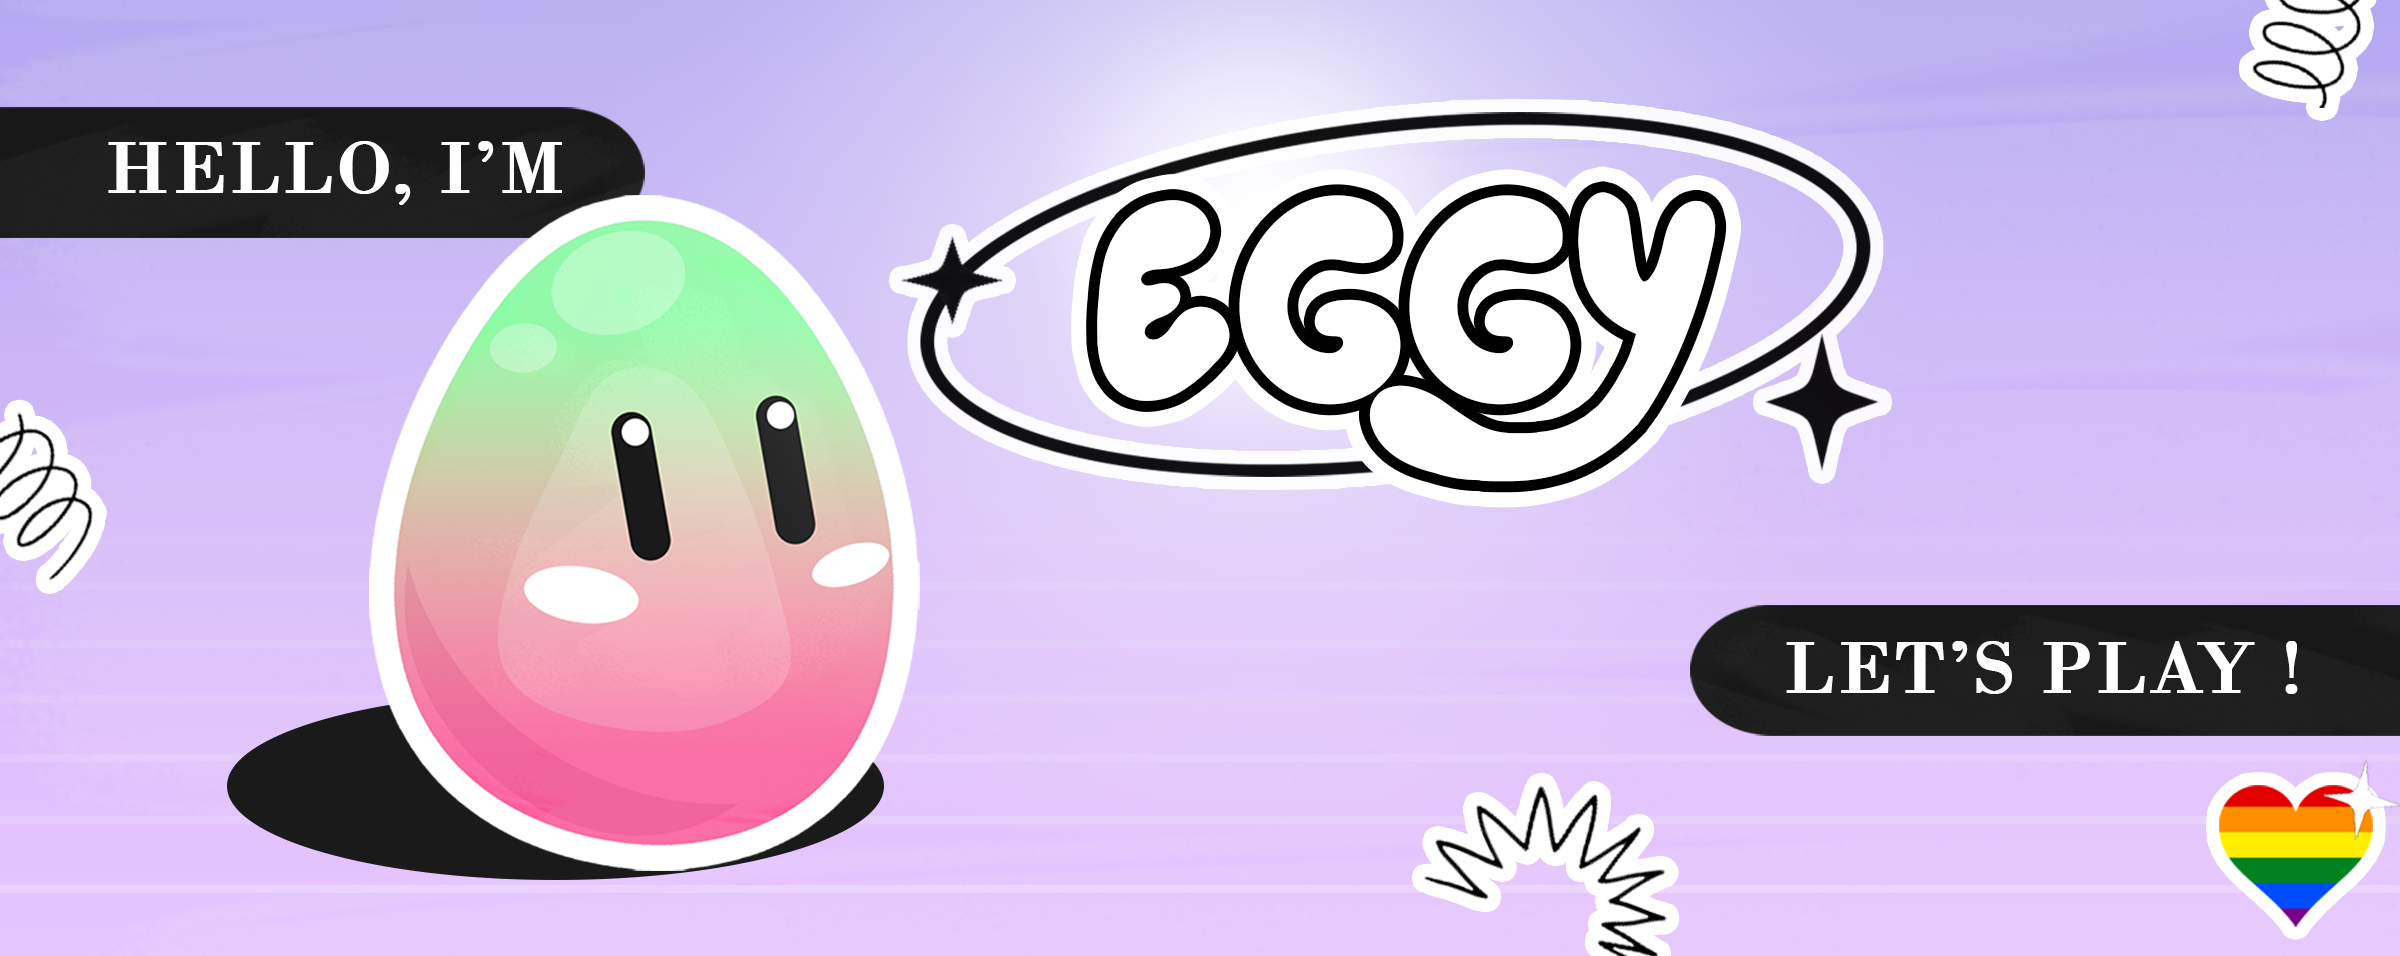 I'm Eggy